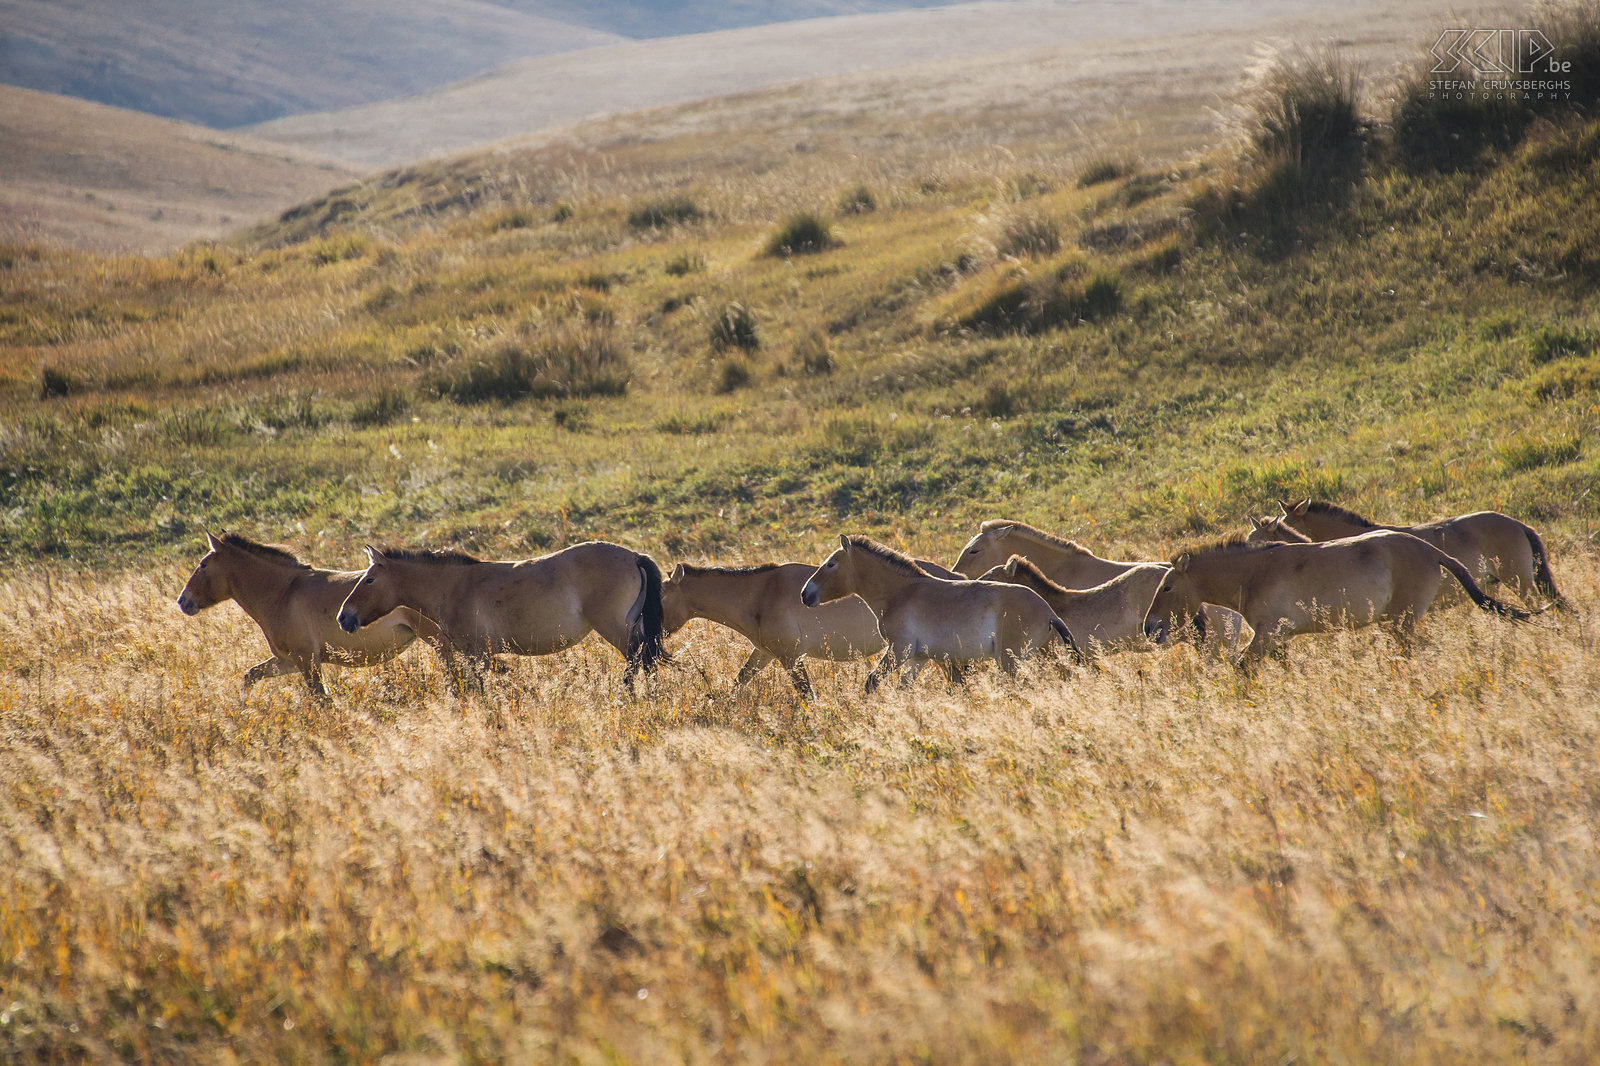 Hustai - Przewalski paarden Een groep van wilde Przewalski paarden in Hustai/Khustain Nuruu nationale park. Het traditionele Mongolische paardenras de Przewalski, takhi in het Mongools,  werd er 20 jaar geleden terug geherintroduceerd. Nu leven er weer meer dan 250 van deze wilde paarden in dit nationale park. Stefan Cruysberghs